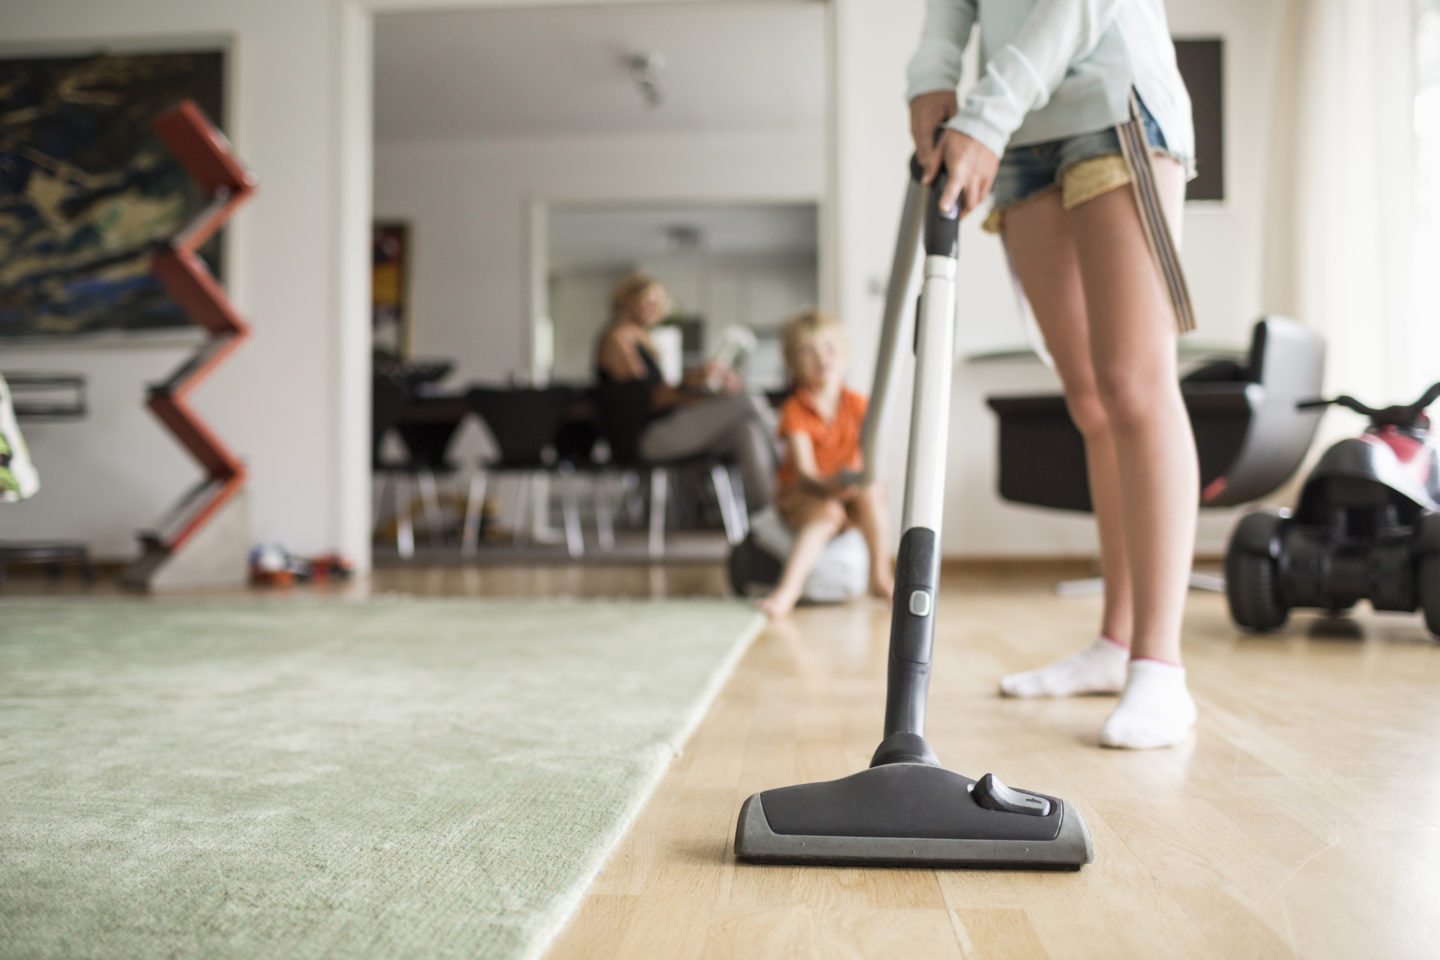 9 ошибок при уборке, от которых дома становится ещё грязнее